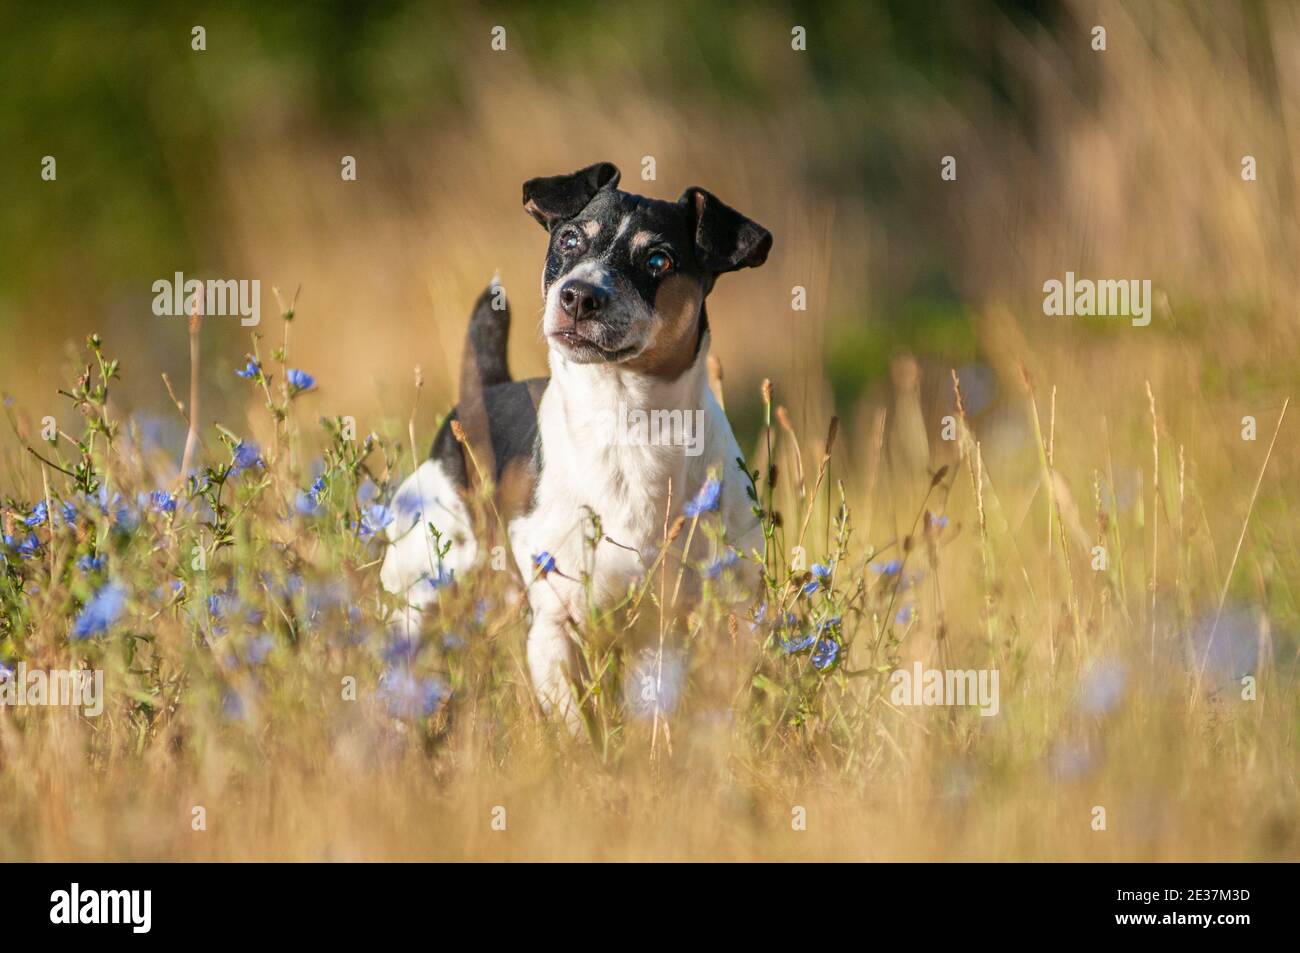 Viejo tricolor Jack Russell Terrier en un ambiente natural. El perro es ciego y tiene una expresión seria Foto de stock